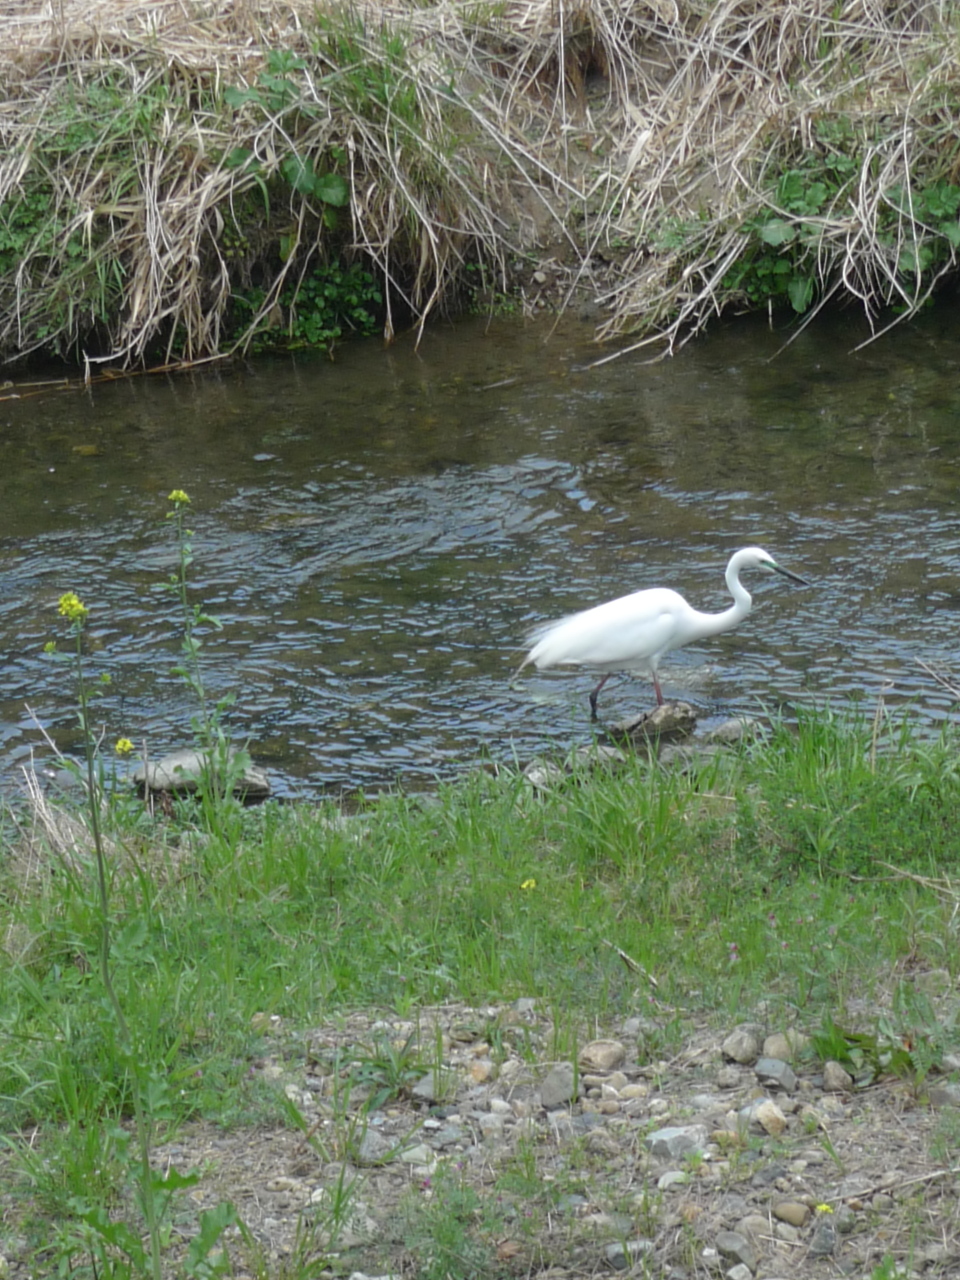 Un oiseau échassier blanc dans un cours d'eau.